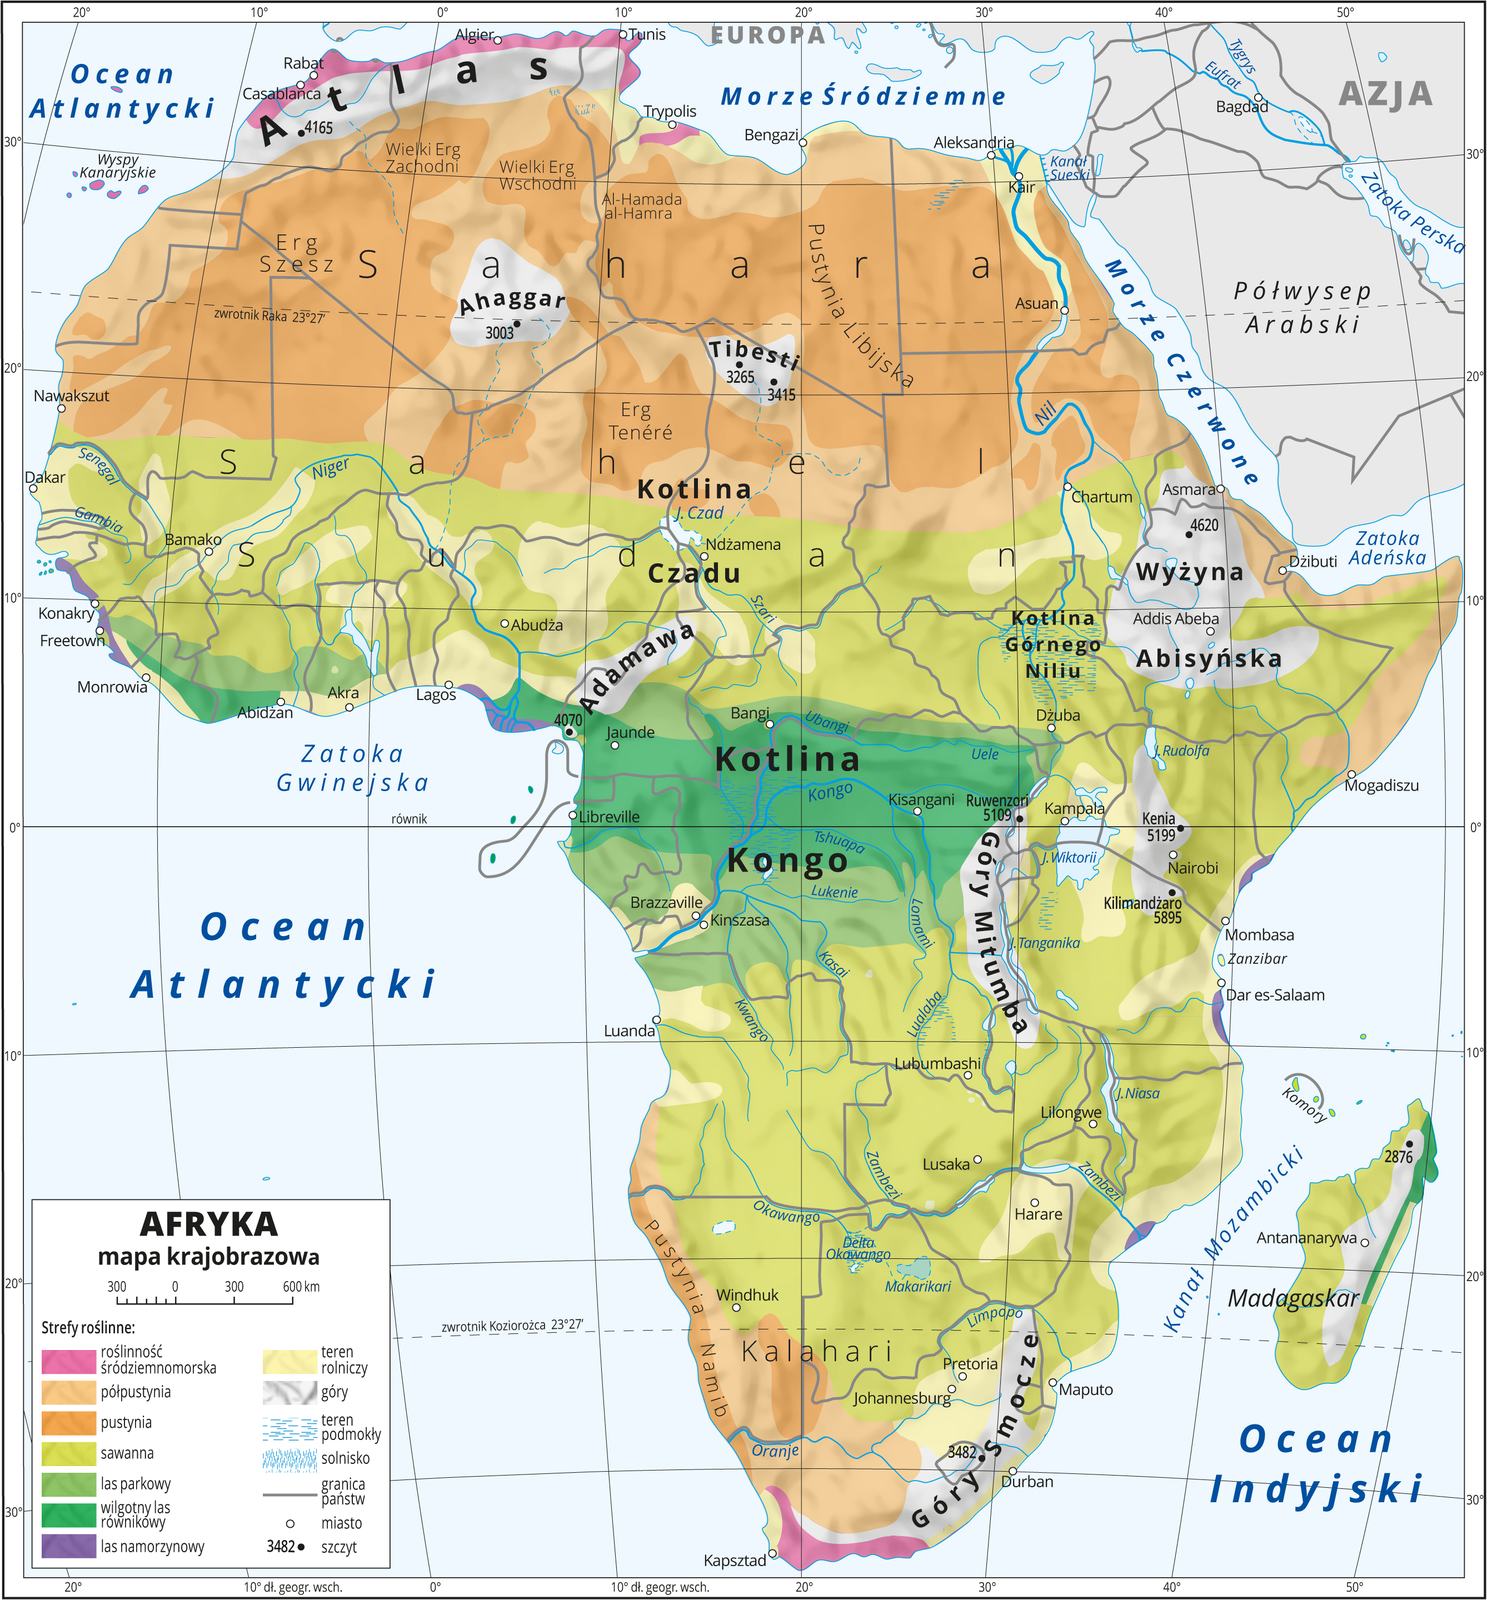 Ilustracja przedstawia mapę krajobrazową Afryki. Na mapie uwzględniono następujące strefy roślinne: roślinność śródziemnomorska, półpustynia, pustynia, sawanna, las parkowy, wilgotny las, równikowy, las namorzynowy. Strefy roślinności układają się pasami, wzdłuż równika – las równikowy w Kotlinie Kongo, dalej na północ i południe: lasy parkowe, sawanny, półpustynie i pustynie. Góry oznaczone kolorem szarym, obszary rolnicze – kolorem żółtym (głównie wzdłuż rzek). Morza niebieskie. Na mapie opisano nazwy nizin, wyżyn i pasm górskich, mórz, zatok, rzek i jezior. Oznaczono i opisano główne miasta. Oznaczono czarnymi kropkami i opisano szczyty górskie. Mapa pokryta jest równoleżnikami i południkami. Dookoła mapy w białej ramce opisano współrzędne geograficzne co dziesięć stopni. W legendzie umieszczono i opisano znaki użyte na mapie.